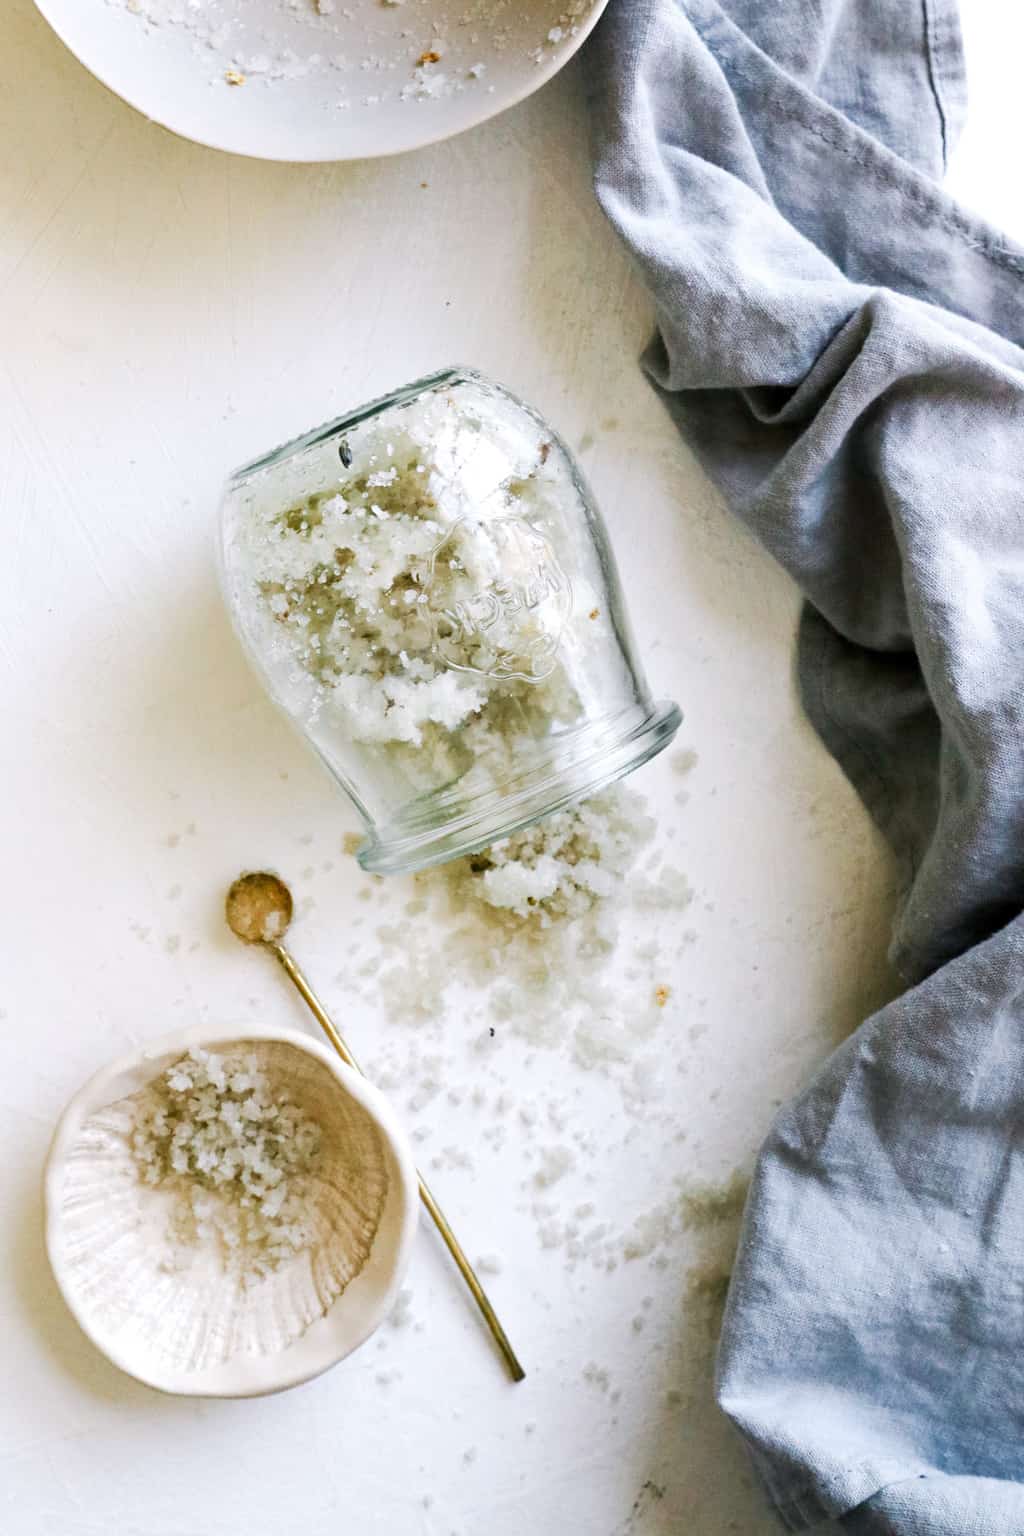 How to make a salt scrub recipe